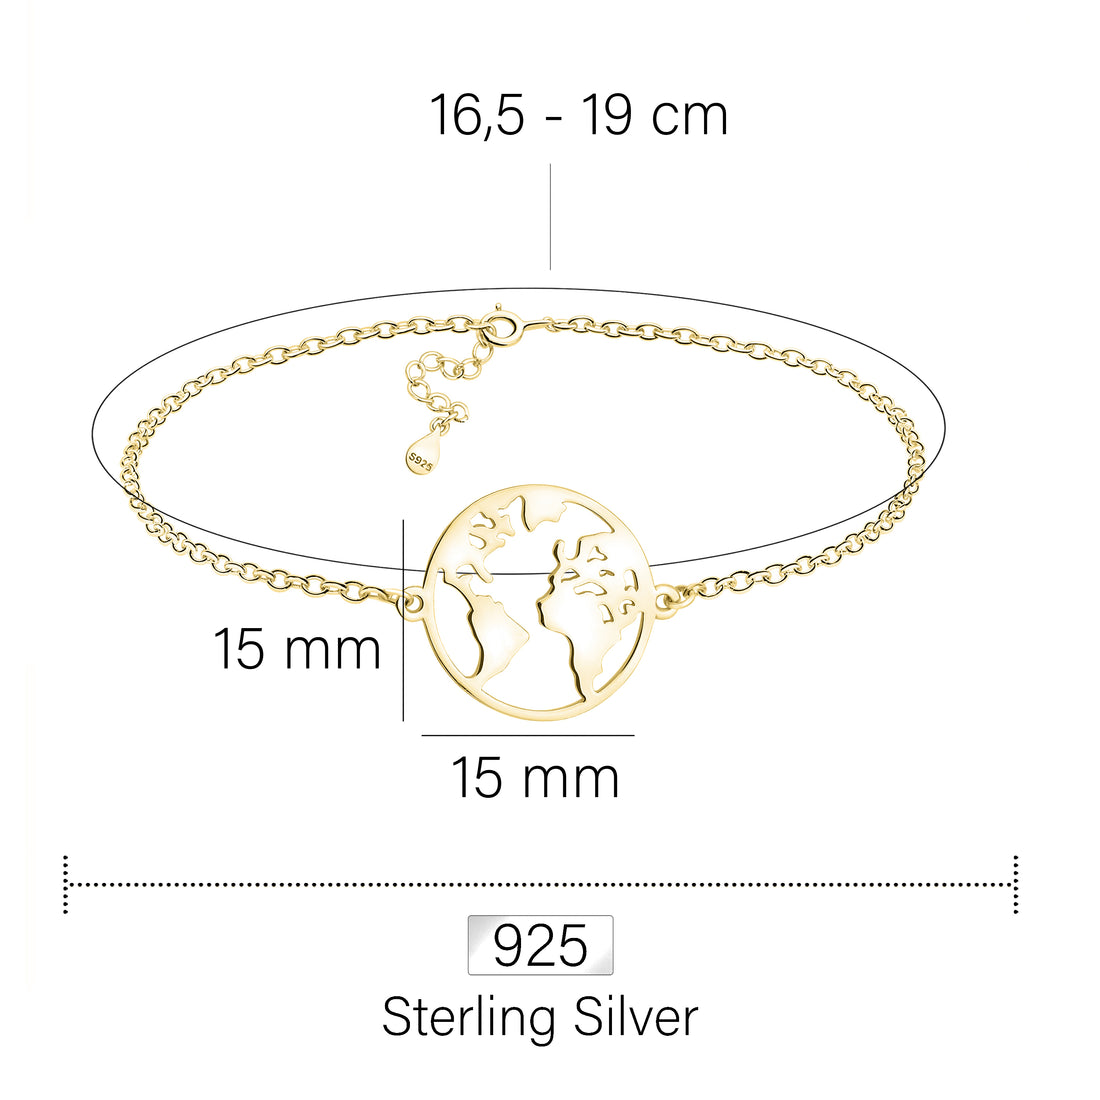 Welt Armband in 925 Silber Vergoldet